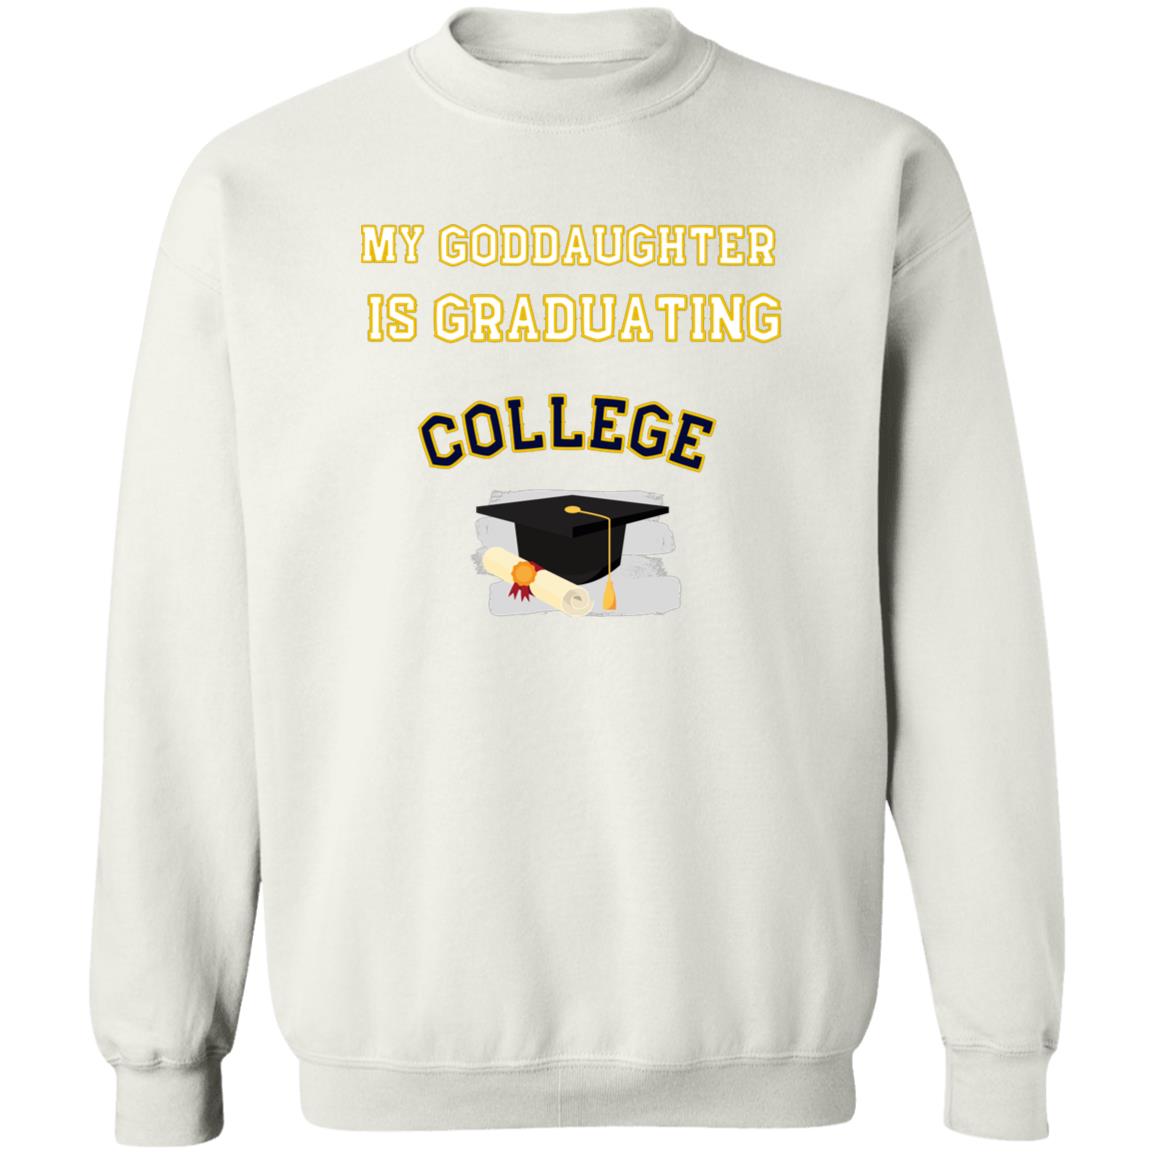 Goddaughter Graduating College Sweatshirt